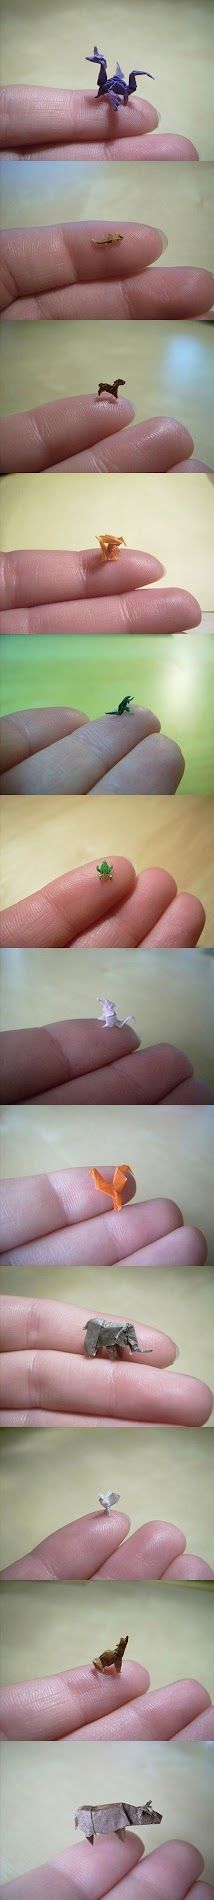 miniature origami